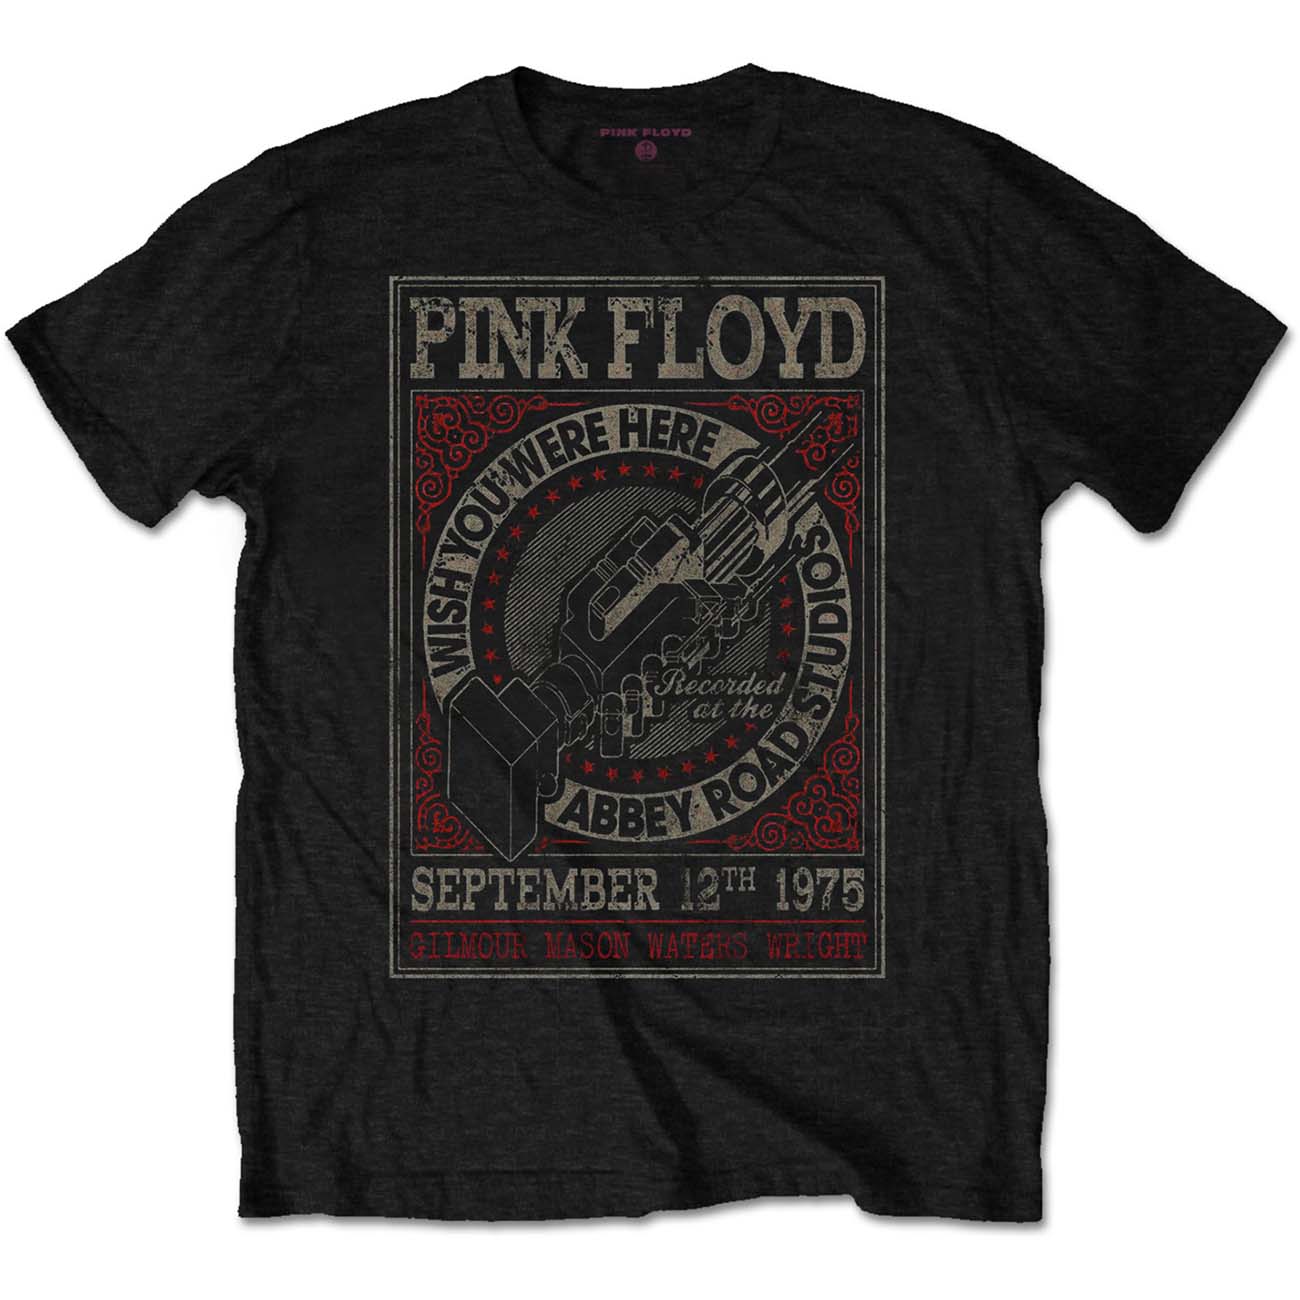 Pink Floyd T-Shirt: WYWH Abbey Road Studios